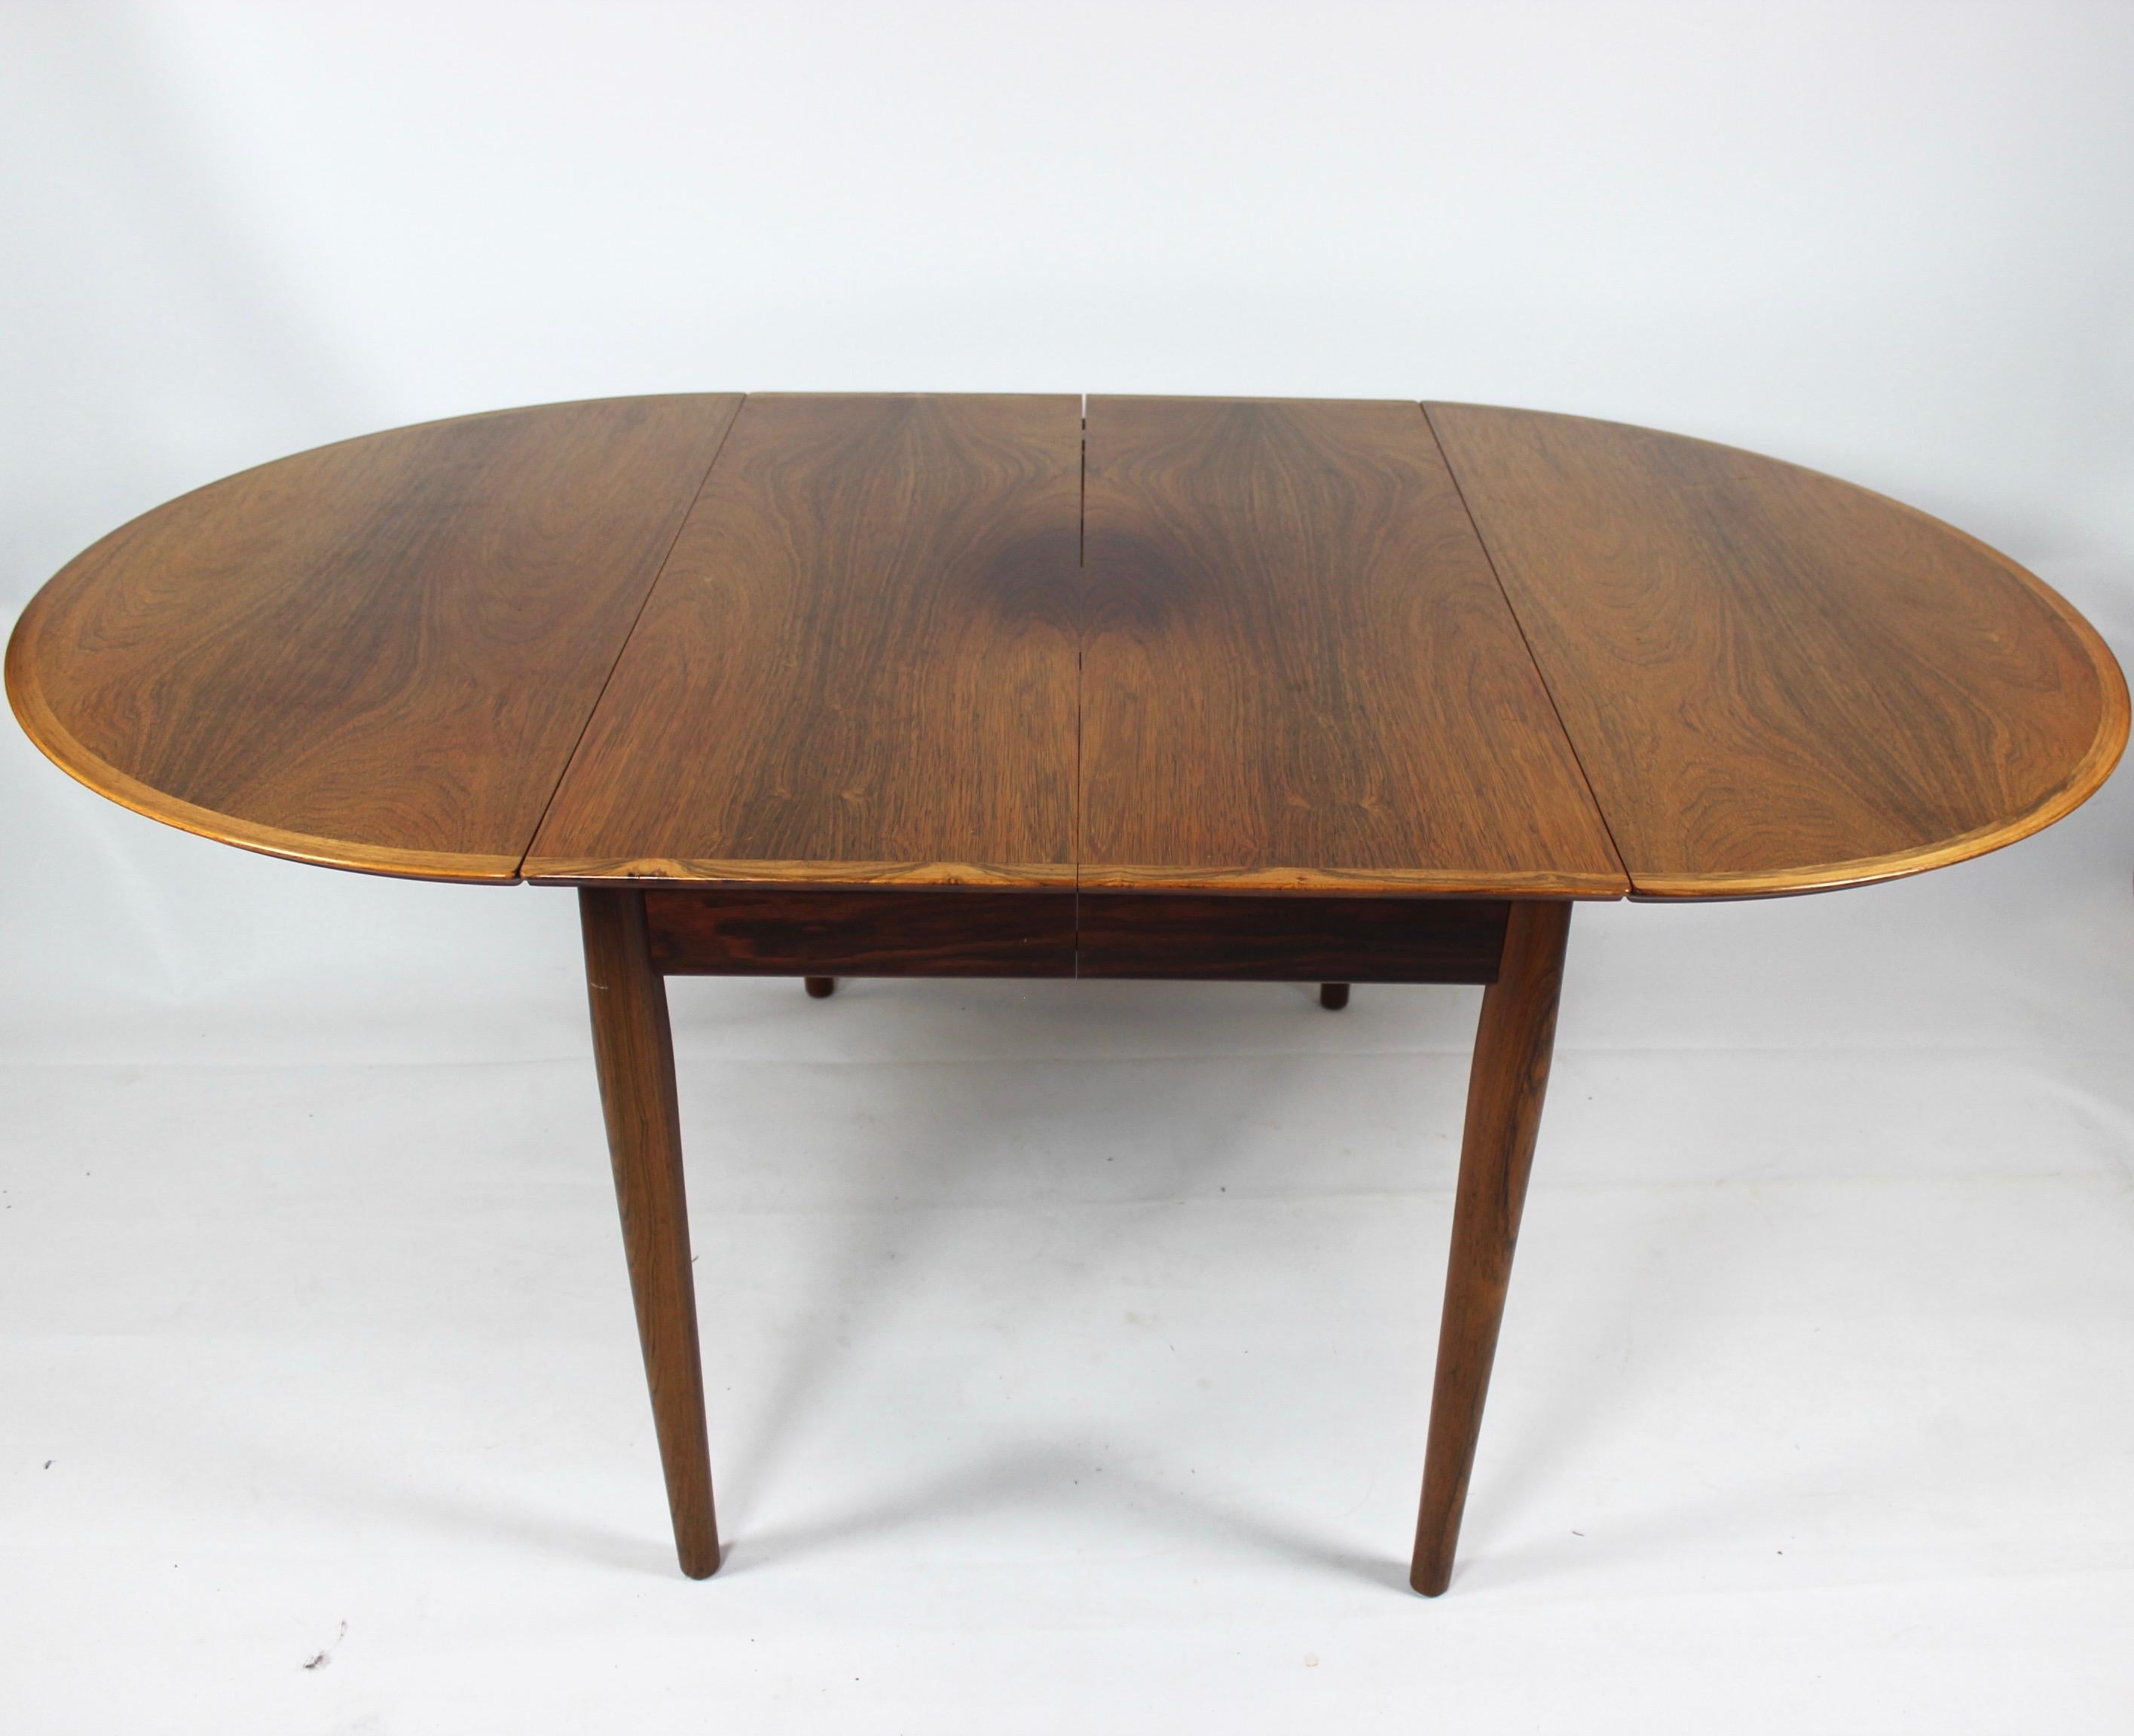 Découvrez l'élégance intemporelle de cette table de salle à manger exquise fabriquée par Arne Vodder dans les années 1960. Façonné dans un riche bois de rose, ce meuble respire la sophistication et la praticité, affichant un design impeccable qui